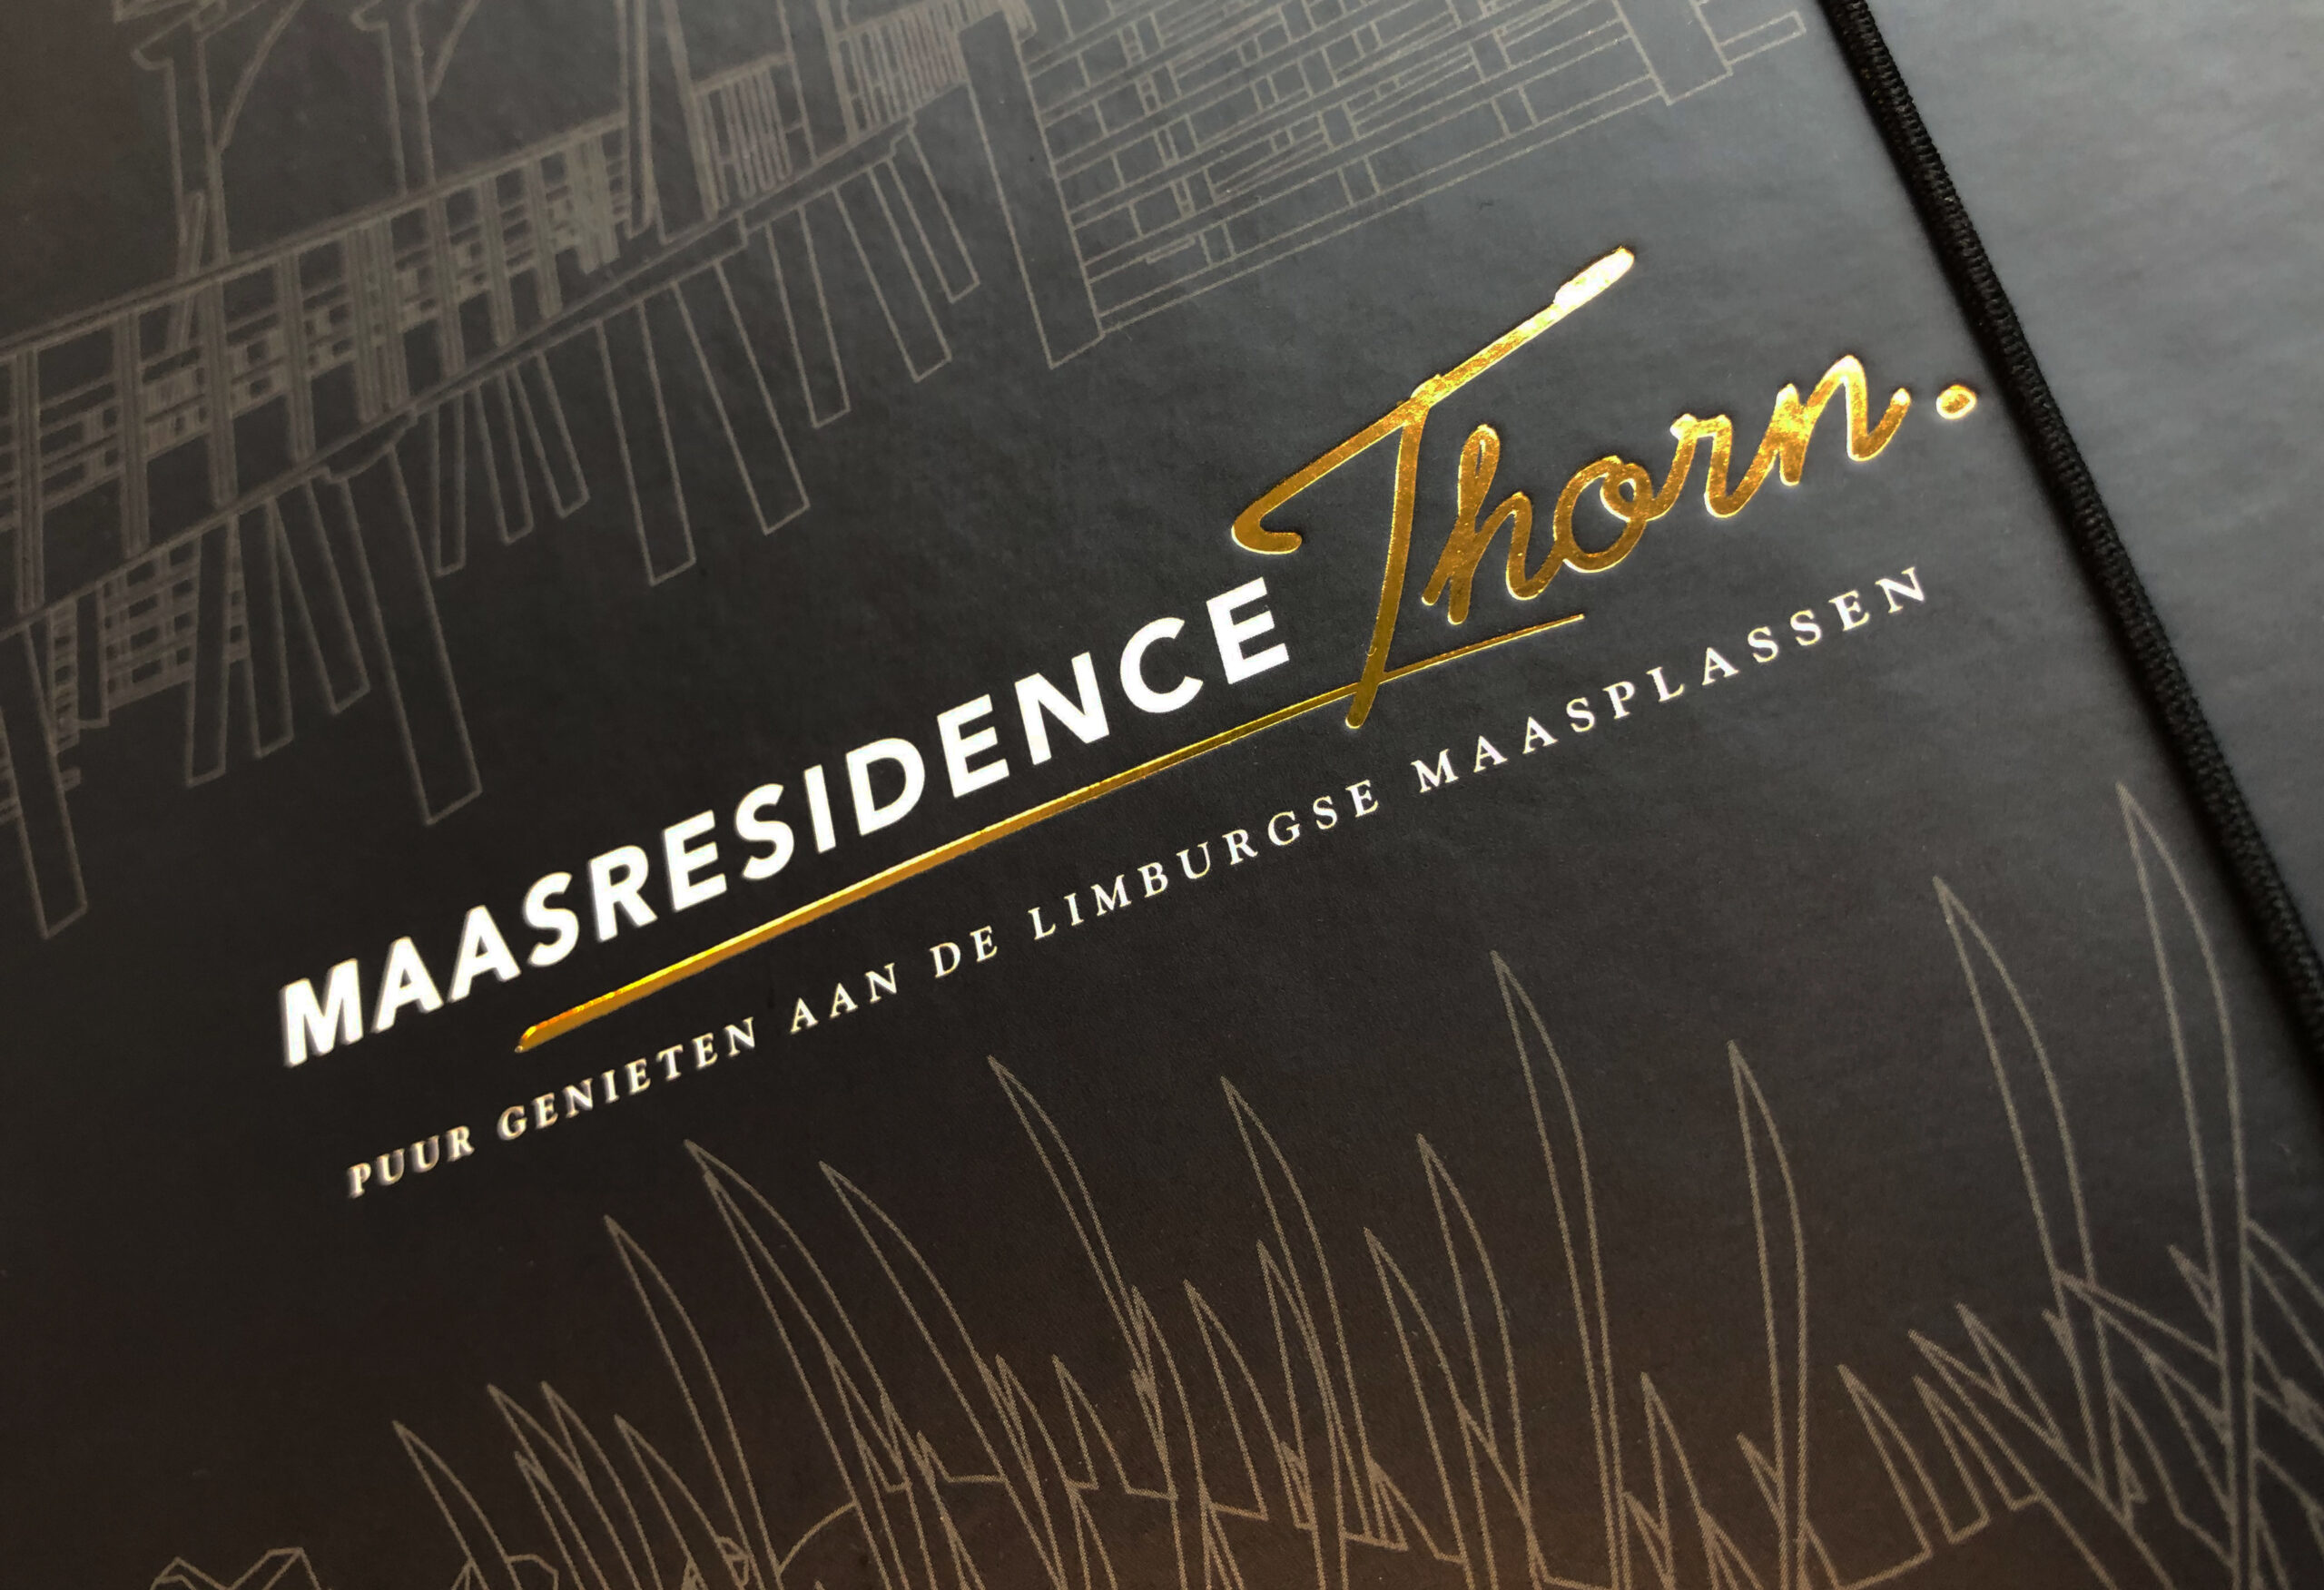 Maasresidence Thorn - Map